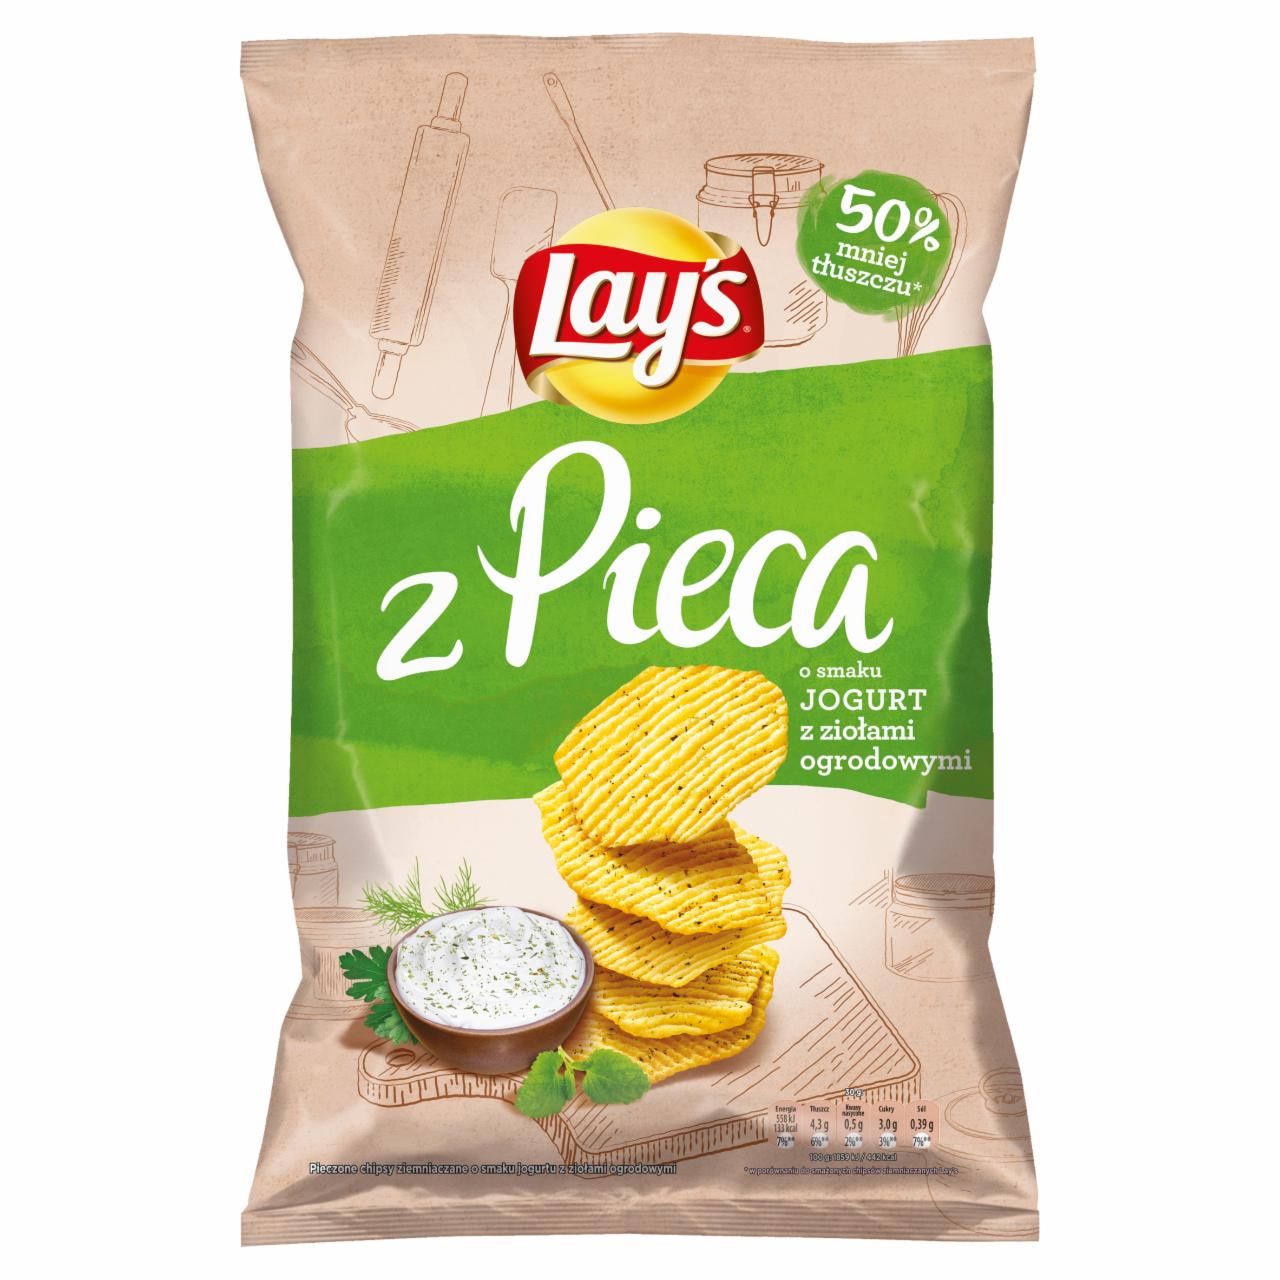 Zdjęcia - Lay's z Pieca Pieczone chipsy Jogurt z ziołami ogrodowymi 130 g